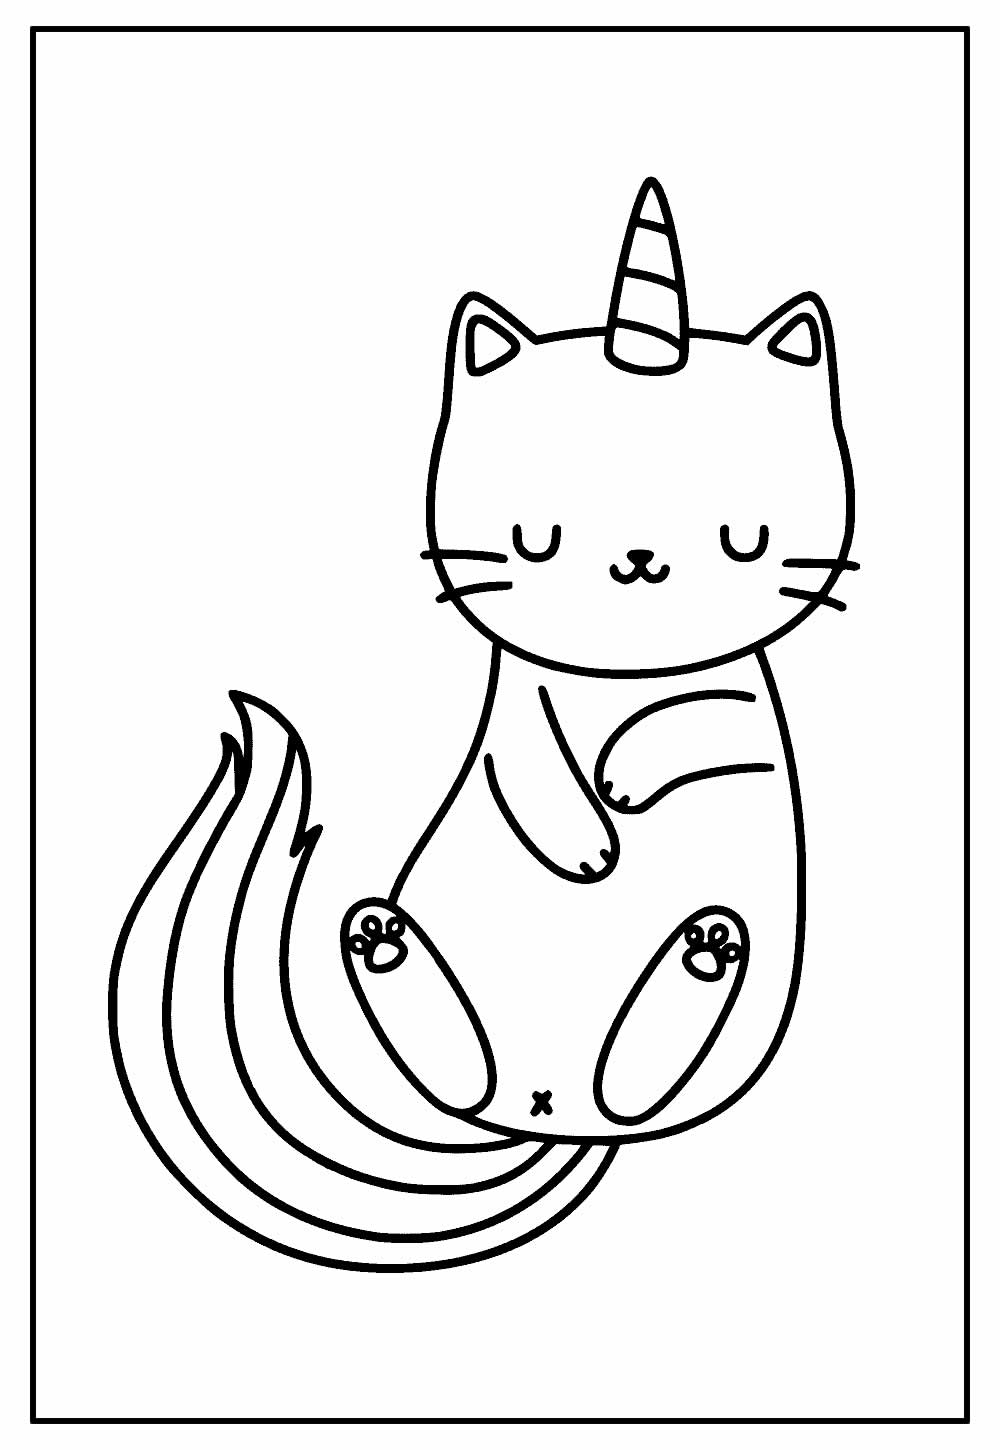 Desenho de Gatinho para imprimir e pintar